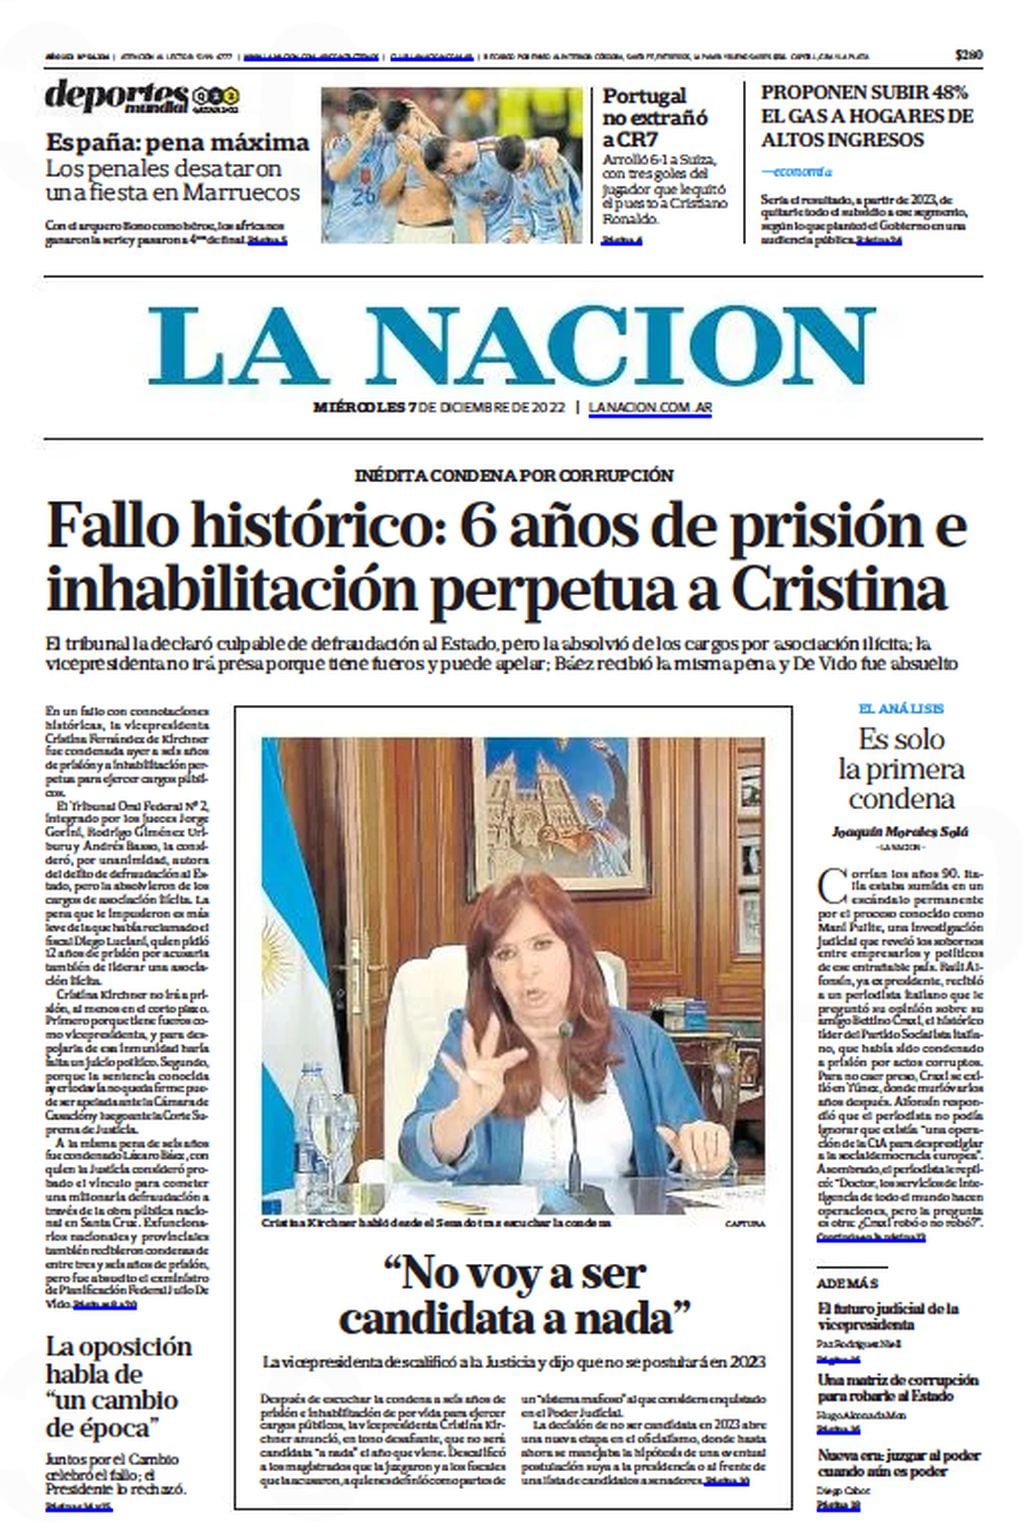 Condena a Cristina Kirchner. Las tapas de los diarios.